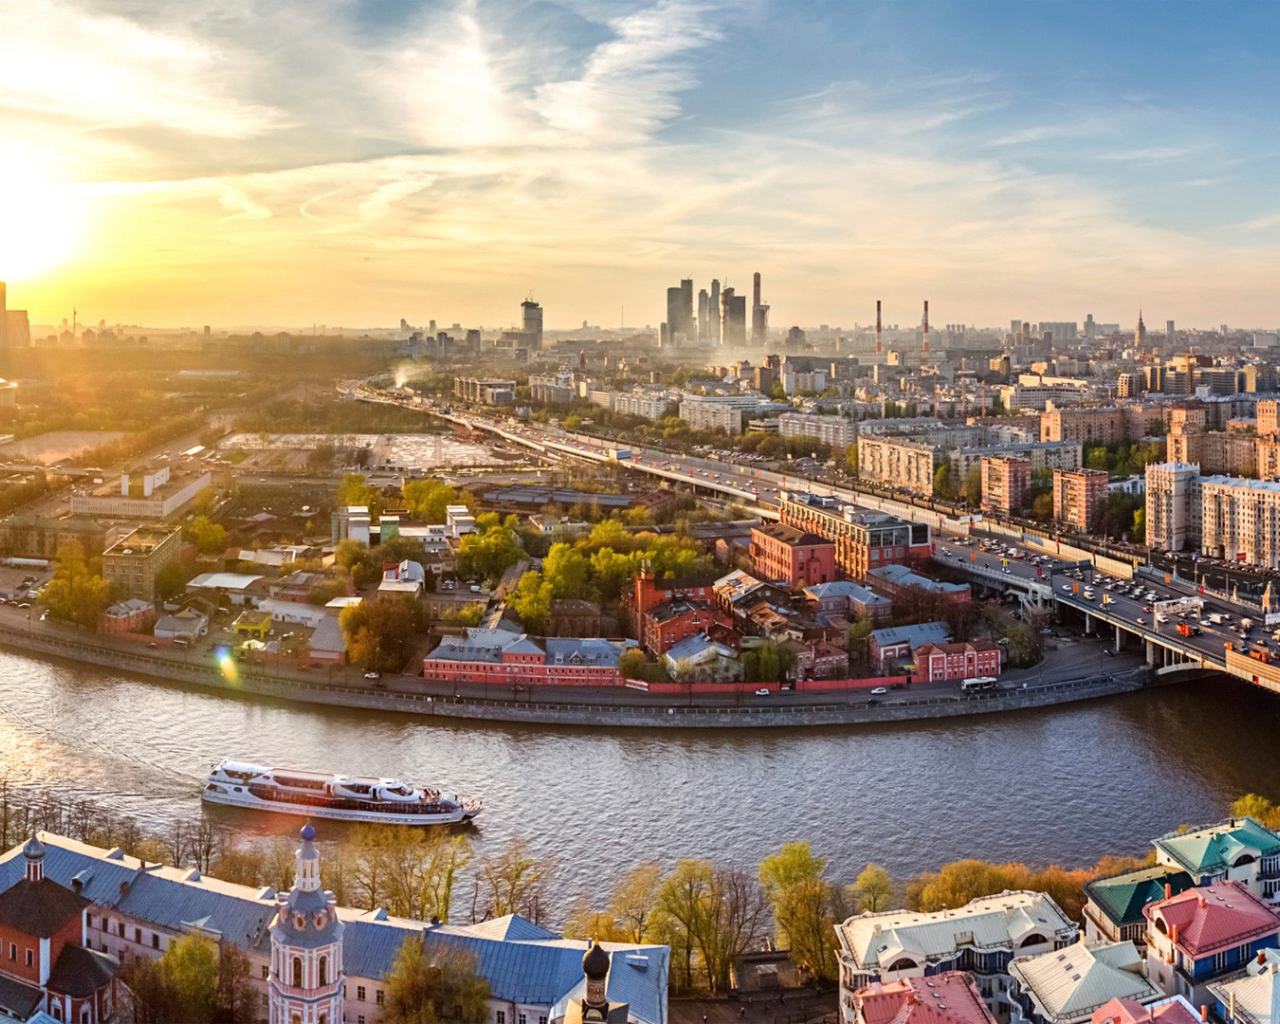 Панорама красивого города Москва, Россия  